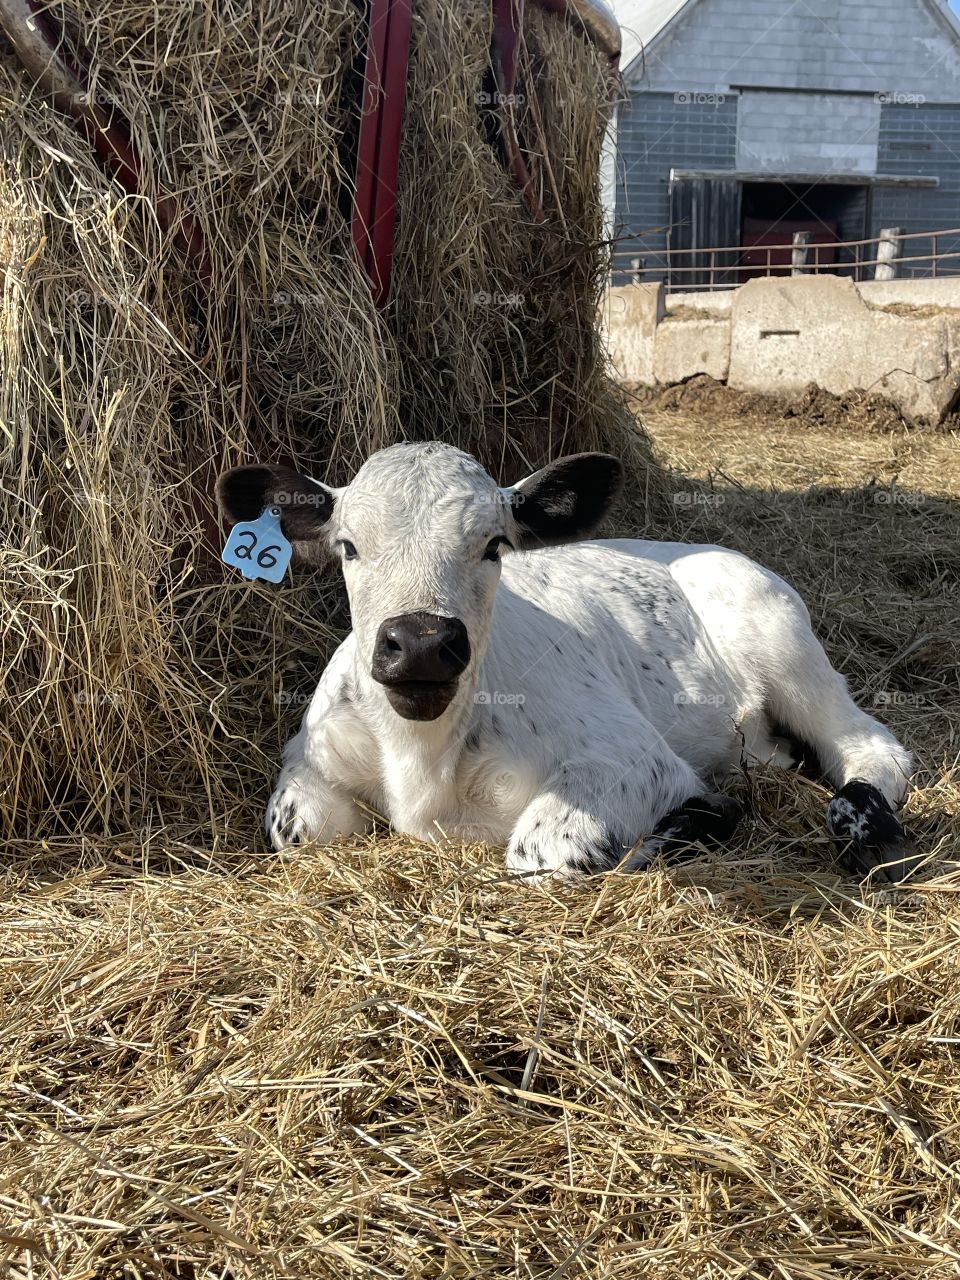 Cute white baby calf. Adorable. Cattle. Farm life Calving season